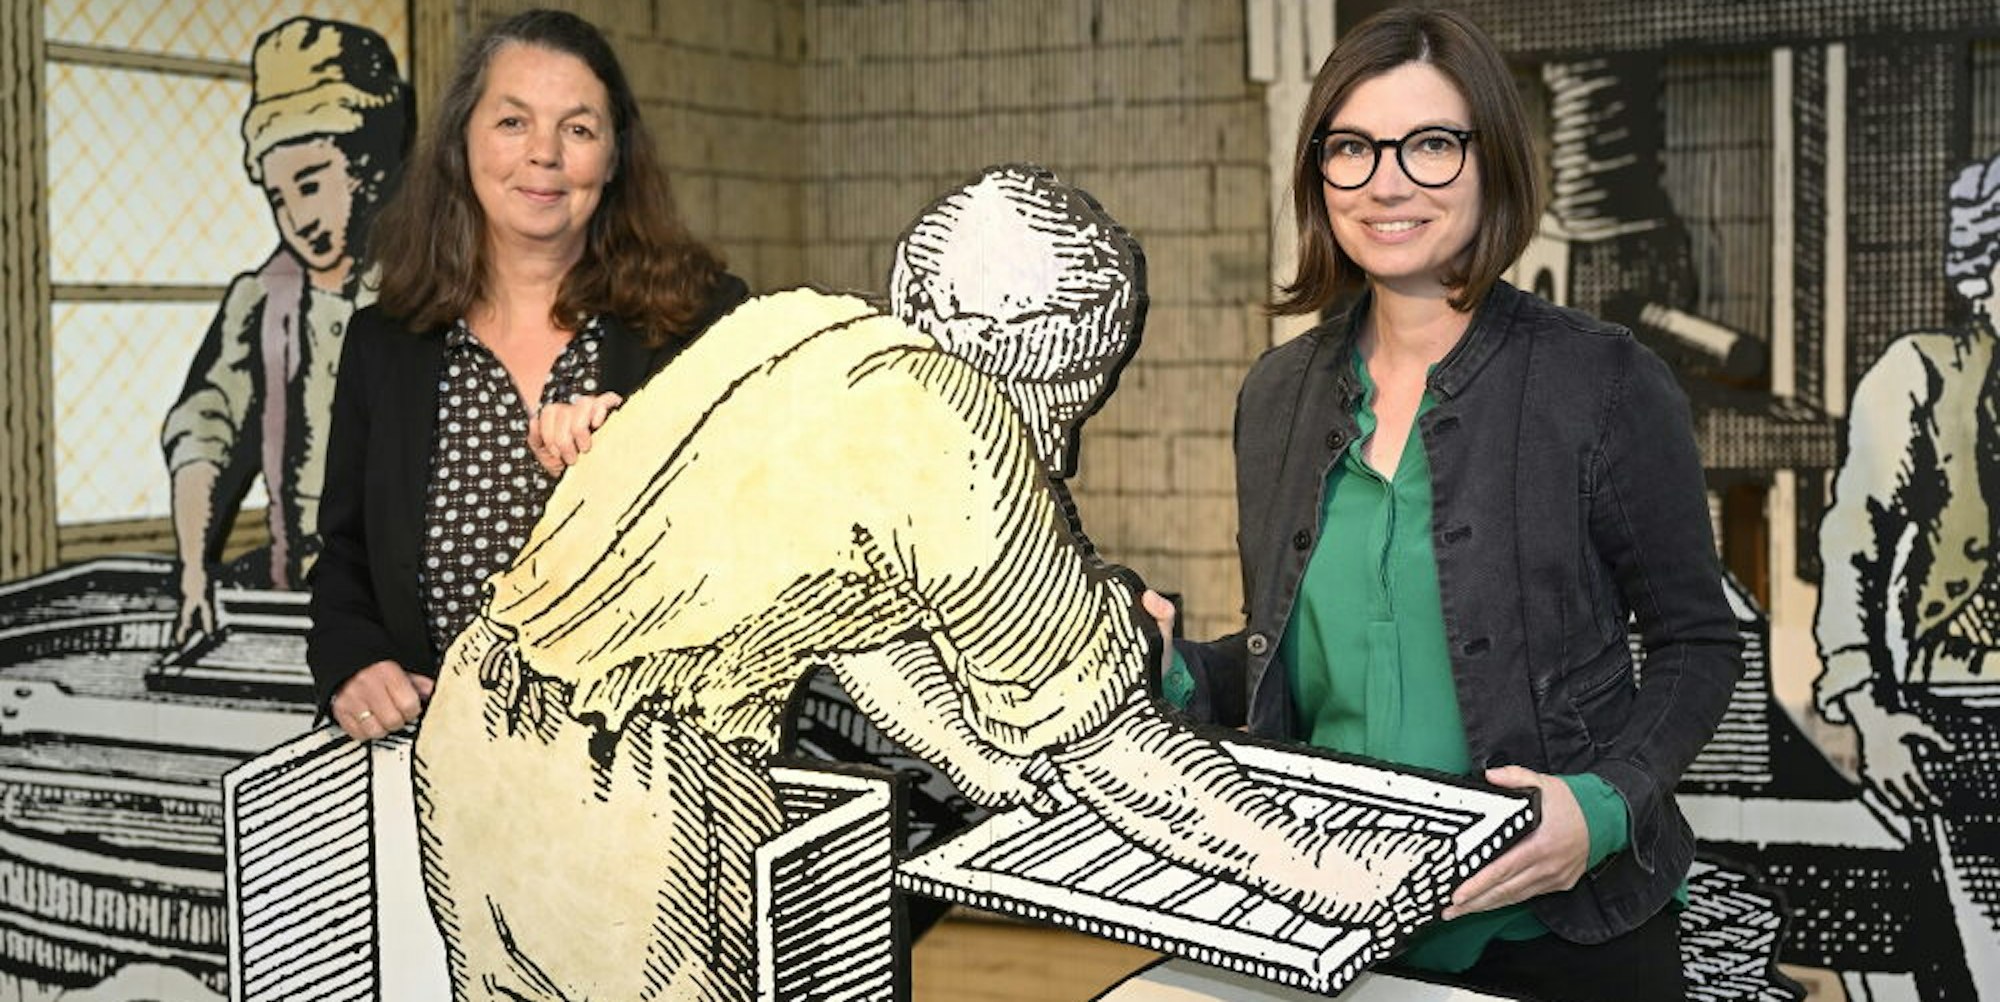 Die neue Leiterin des LVR-Industriemuseums Papiermühle Alte Dombach, Sonja Nanko (r.), mit Kollegin Annette Schrick.